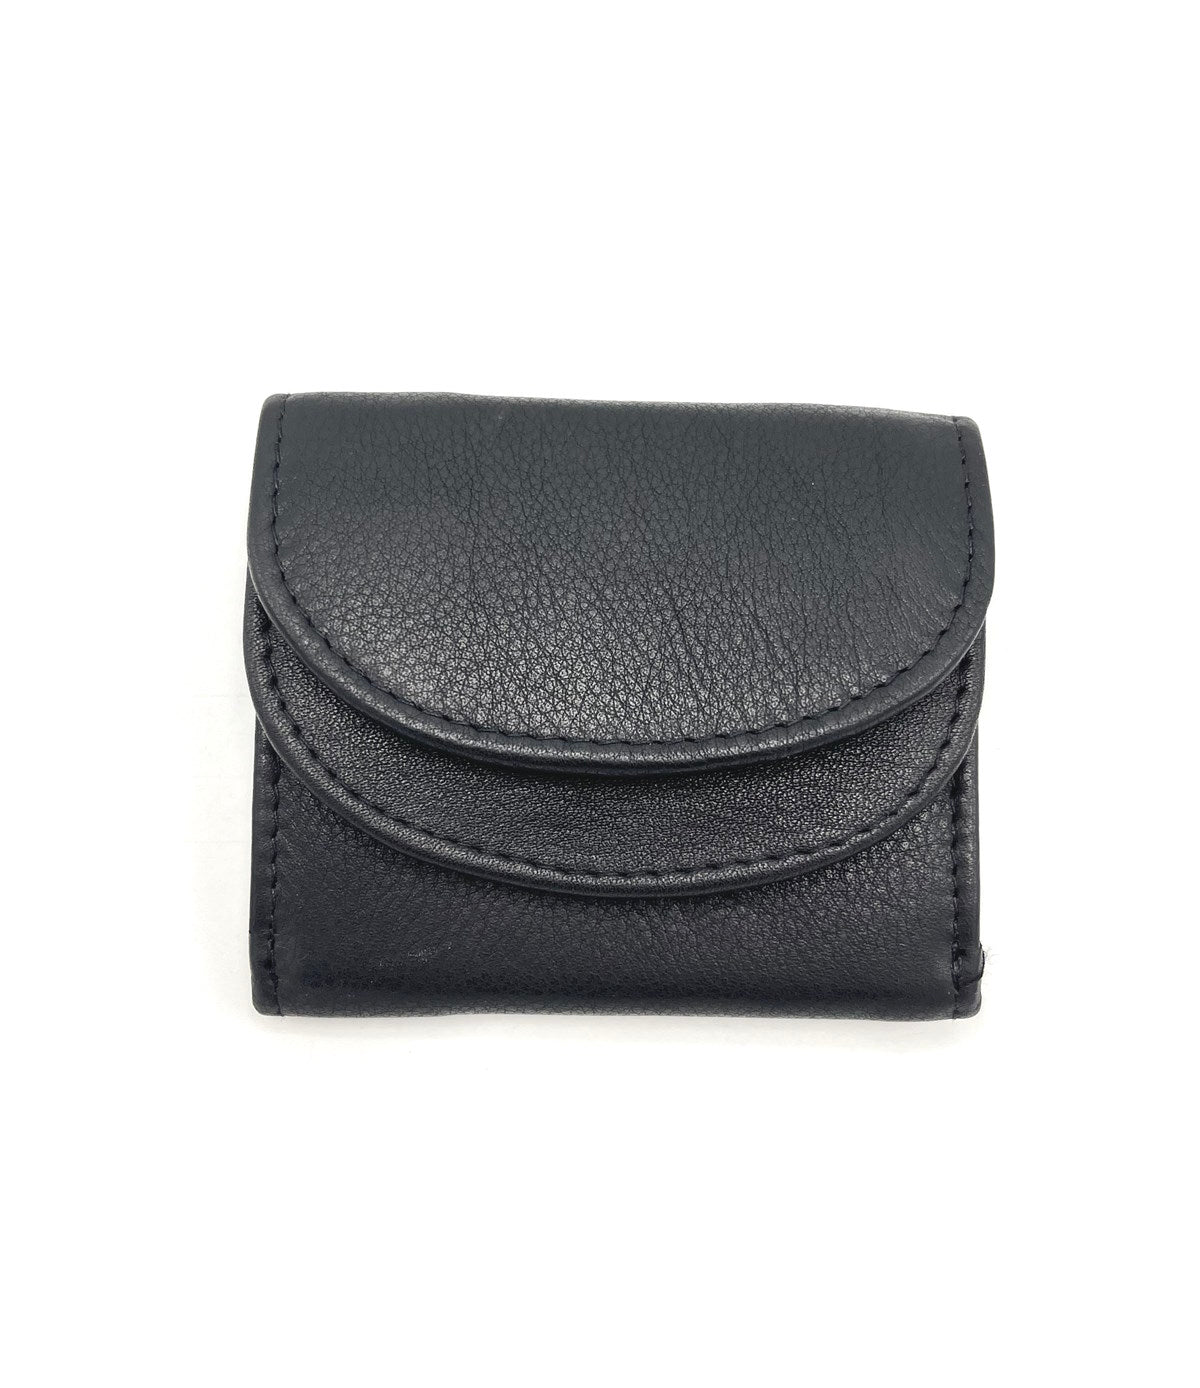 Genuine leather wallet, art. BA21